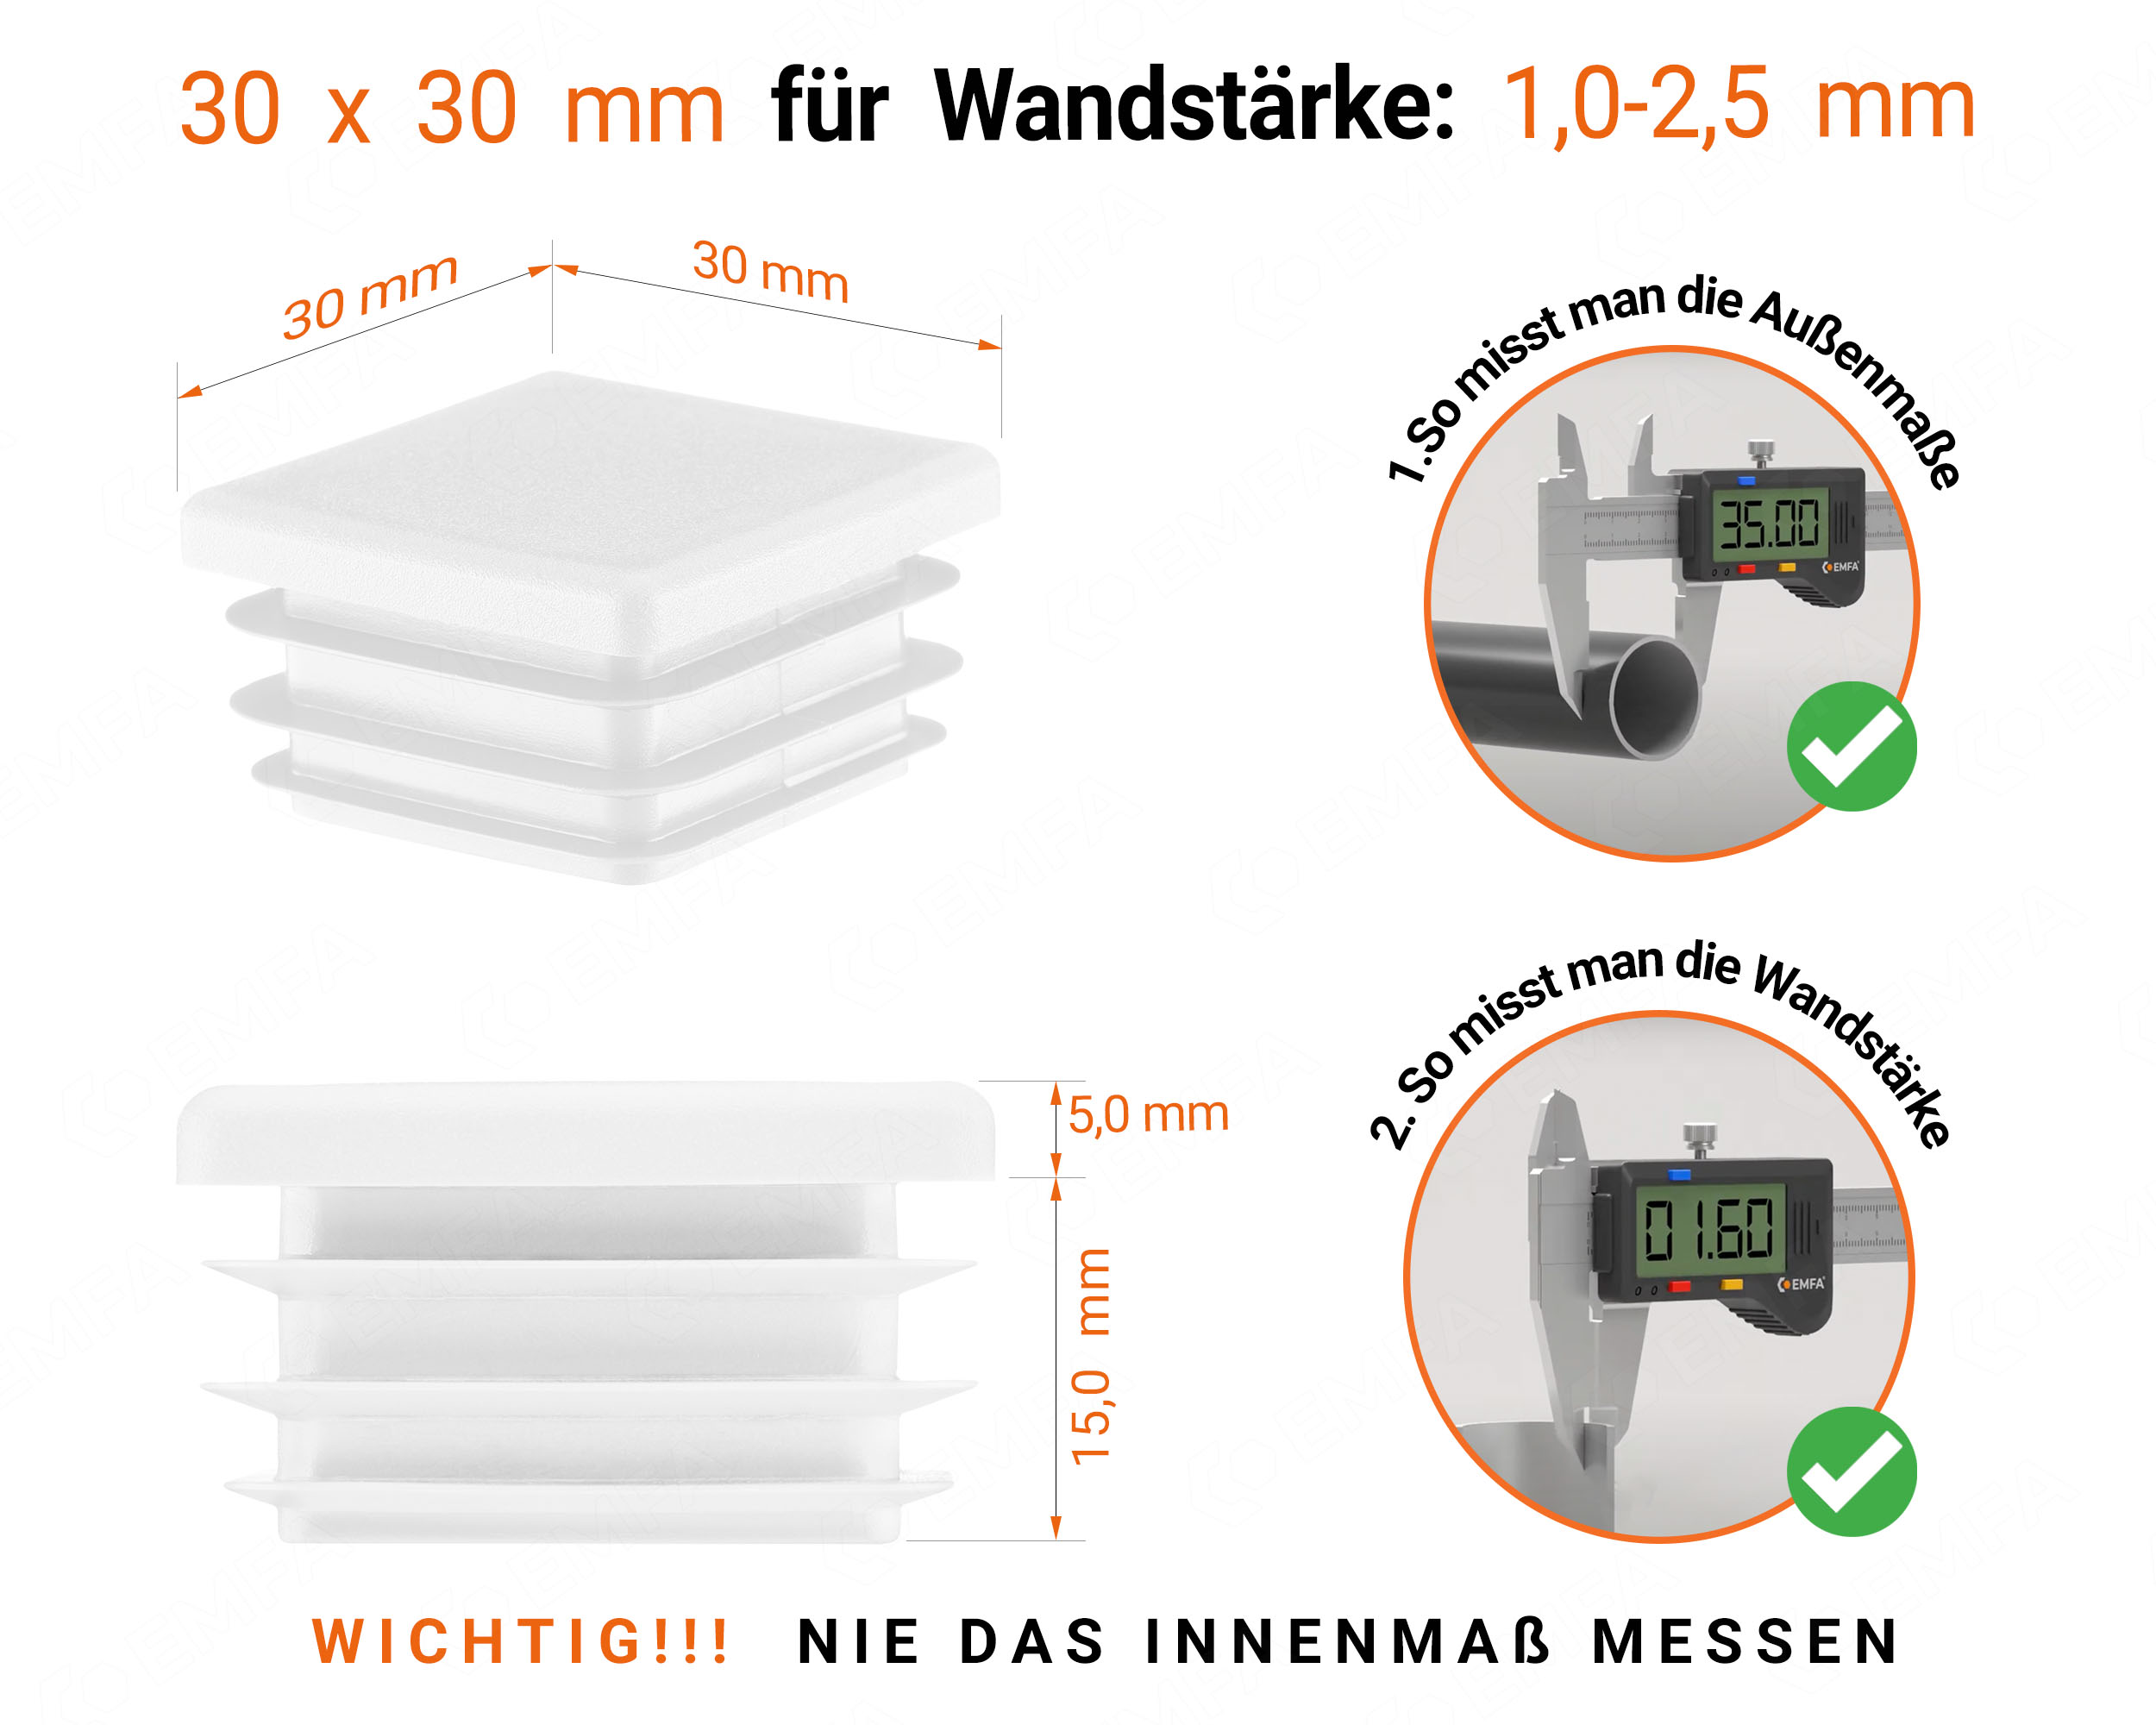 Weiße Endkappe für Vierkantrohre in der Größe 30x30 mm mit technischen Abmessungen und Anleitung für korrekte Messung